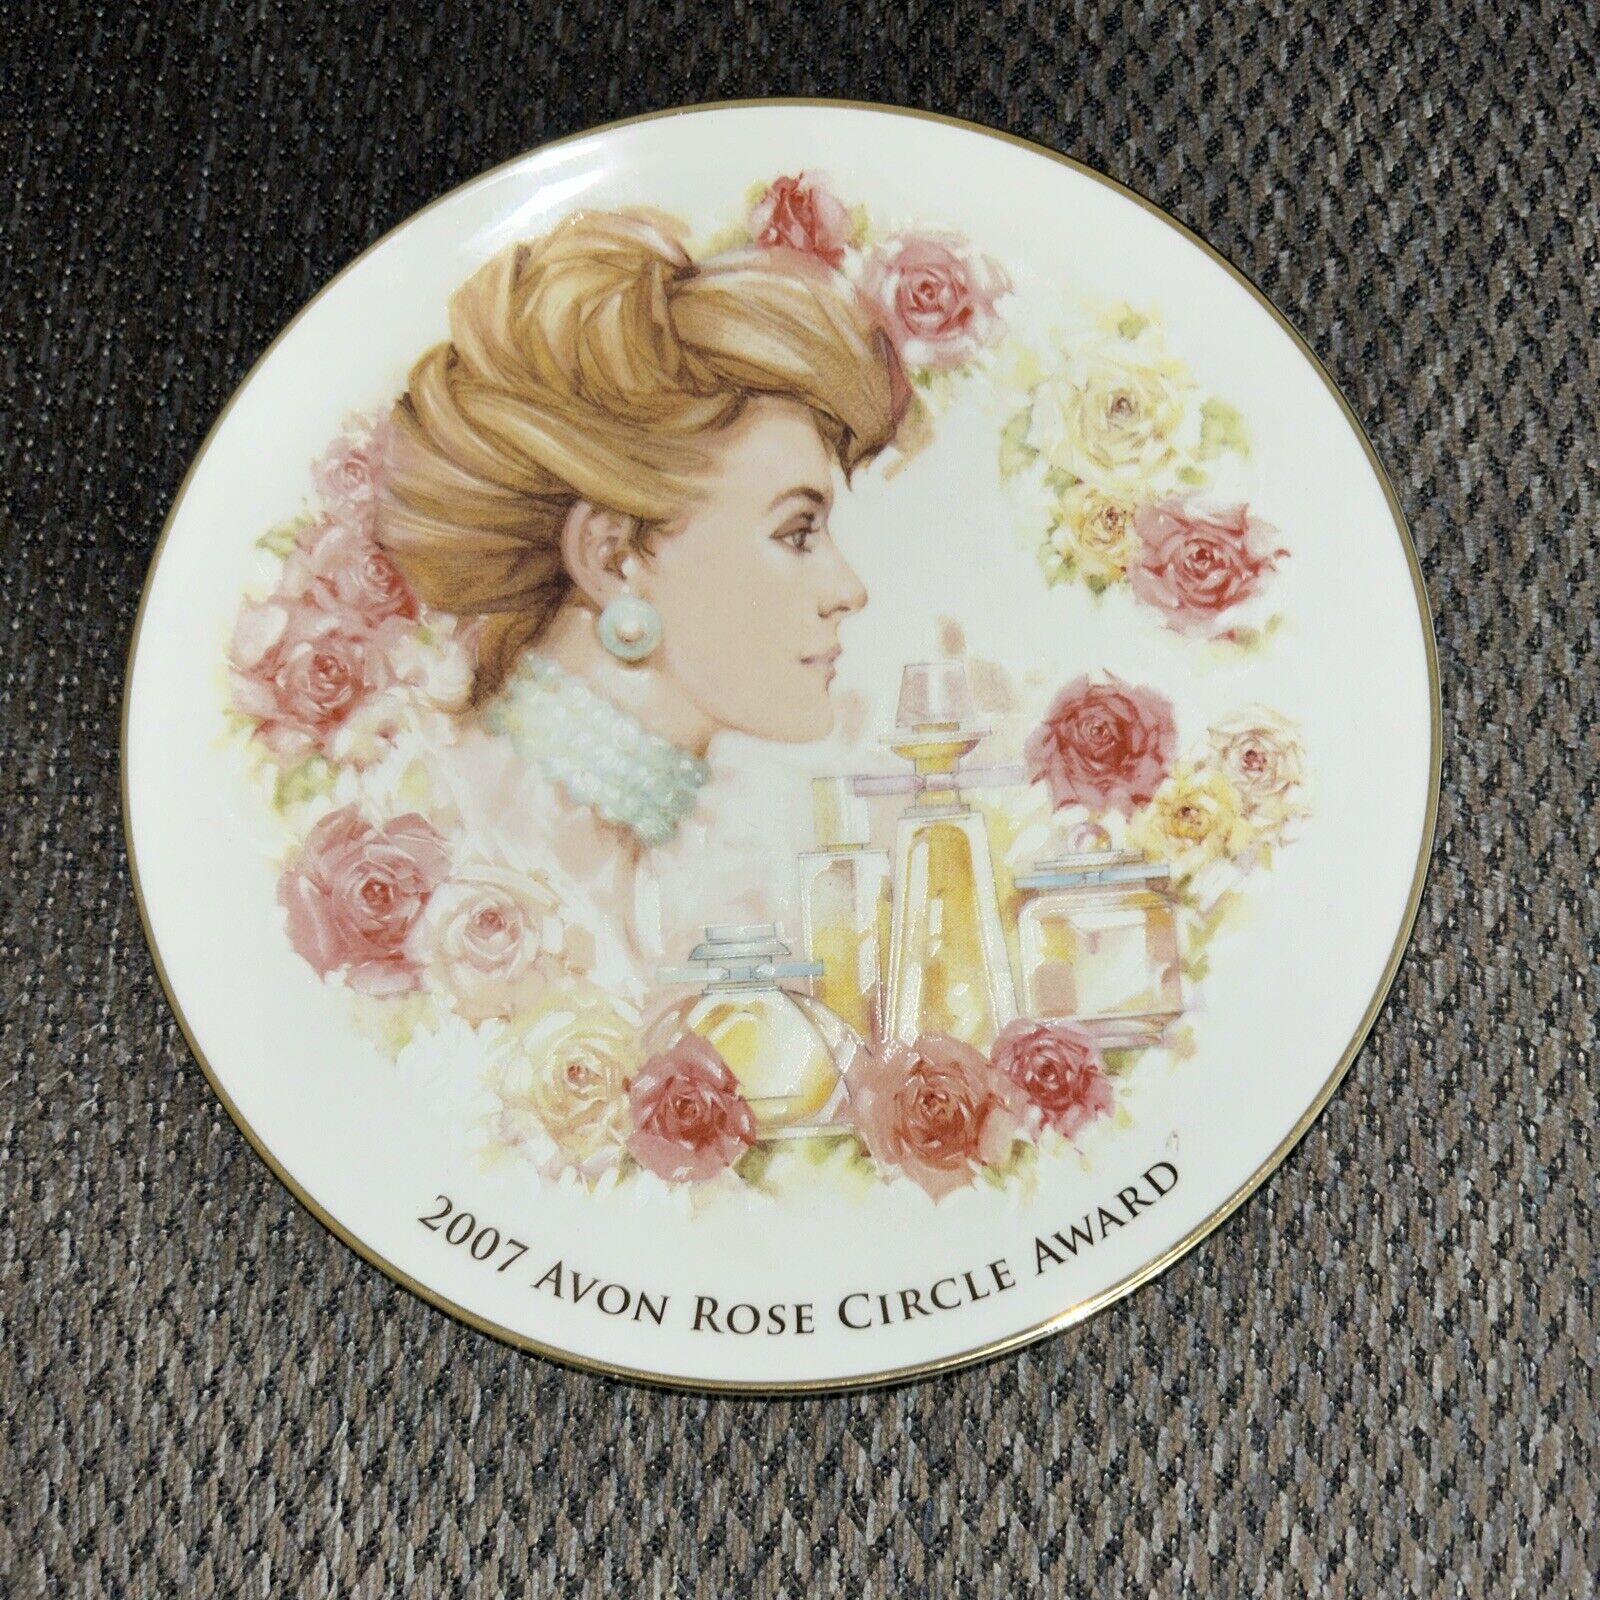 2007 Avon Rose Circle Award Plate 